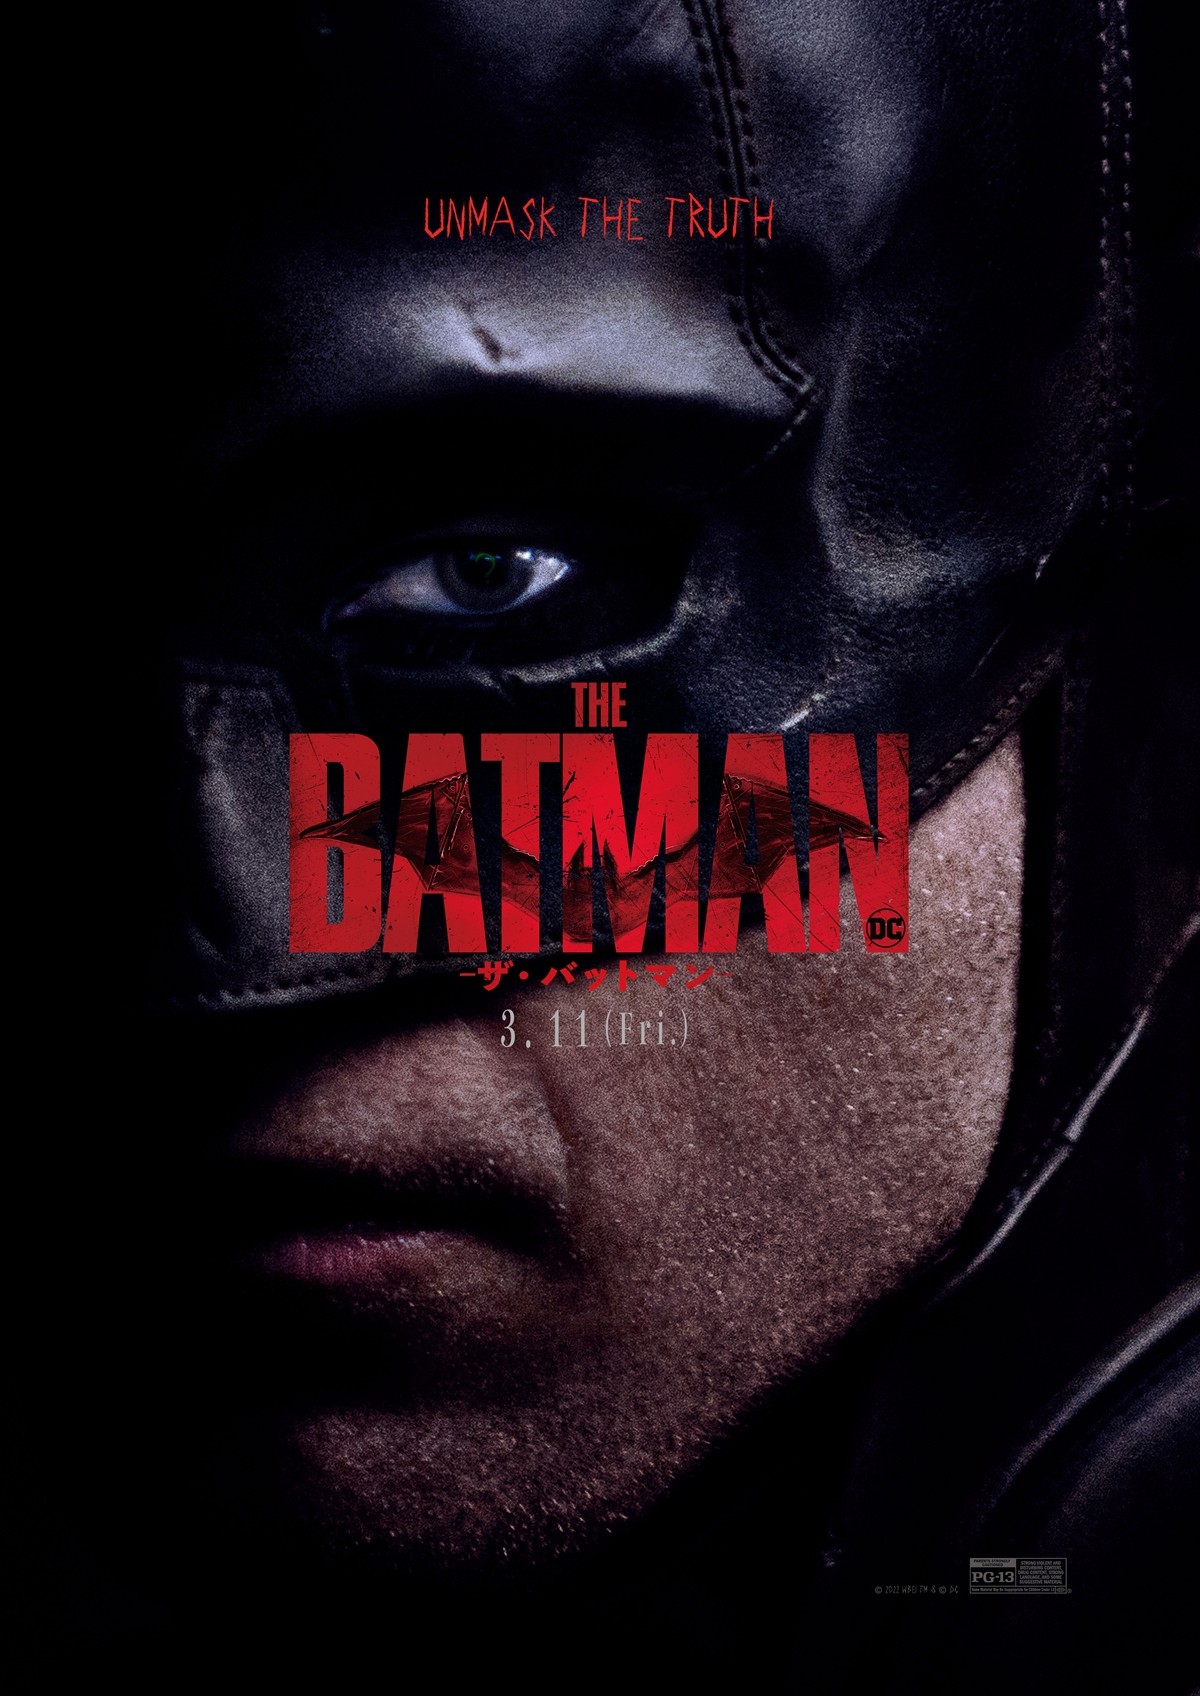 素顔を隠す青年ブルースのマスク姿が印象的！　『THE BATMAN』US版アート解禁